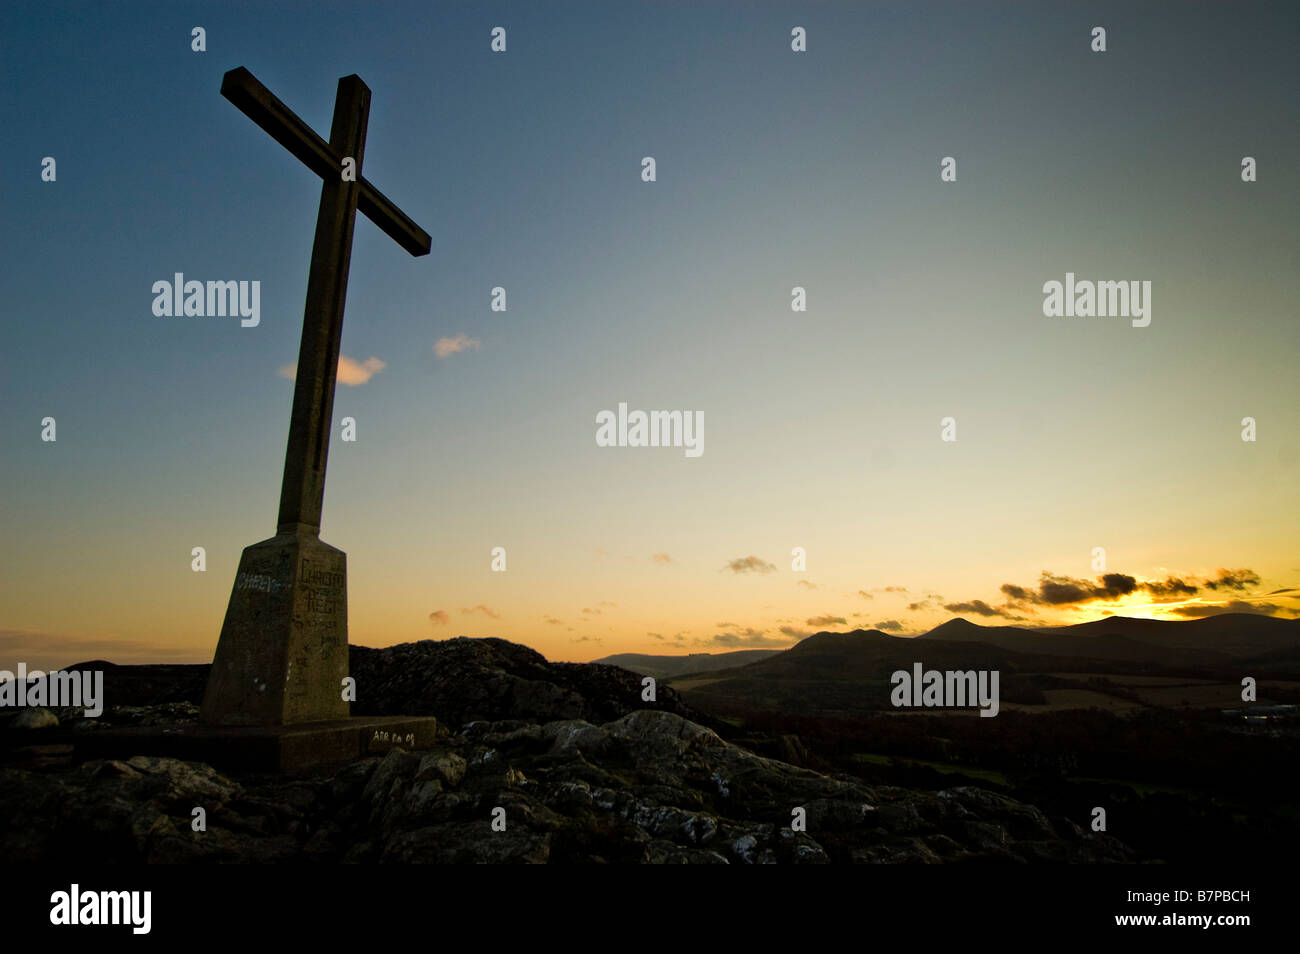 Giant cross on the top of Bray Head against a sunset. Dublin suburbs, Ireland. Stock Photo